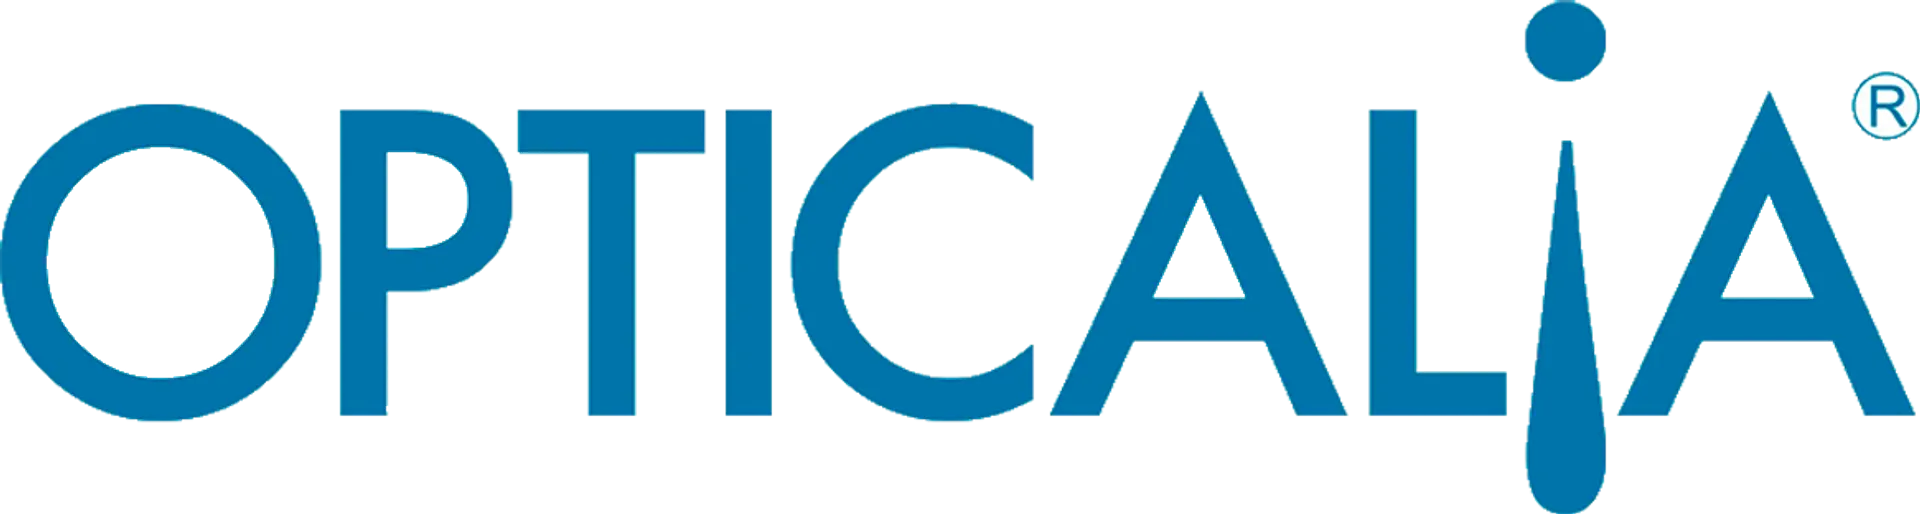 OPTICALIA logo de catálogo